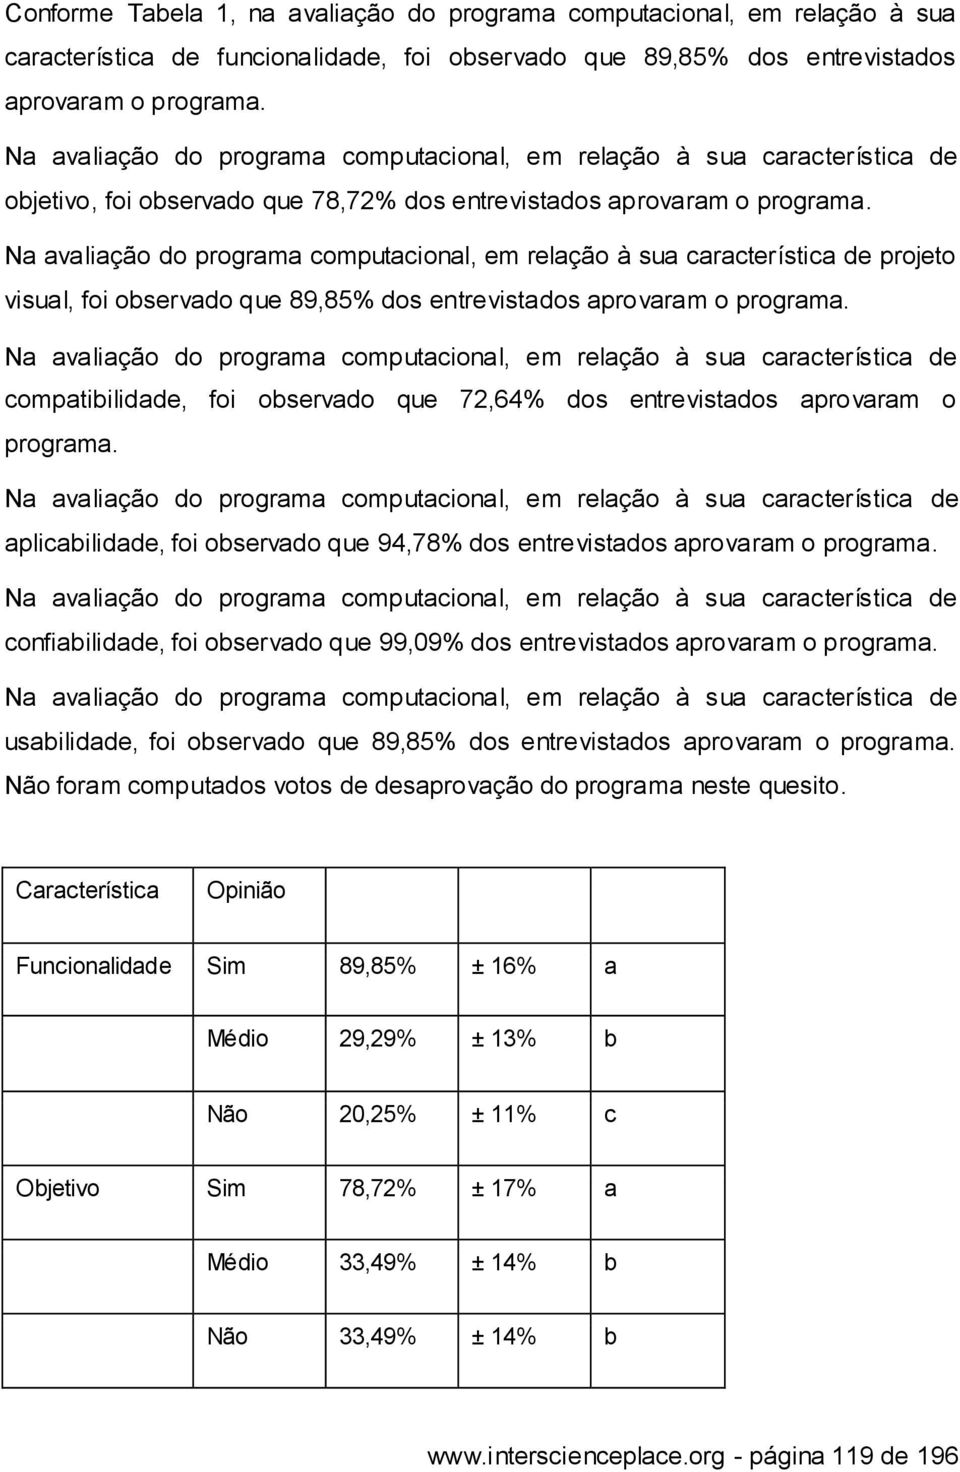 Na avaliação do programa computacional, em relação à sua característica de projeto visual, foi observado que 89,85% dos entrevistados aprovaram o programa.